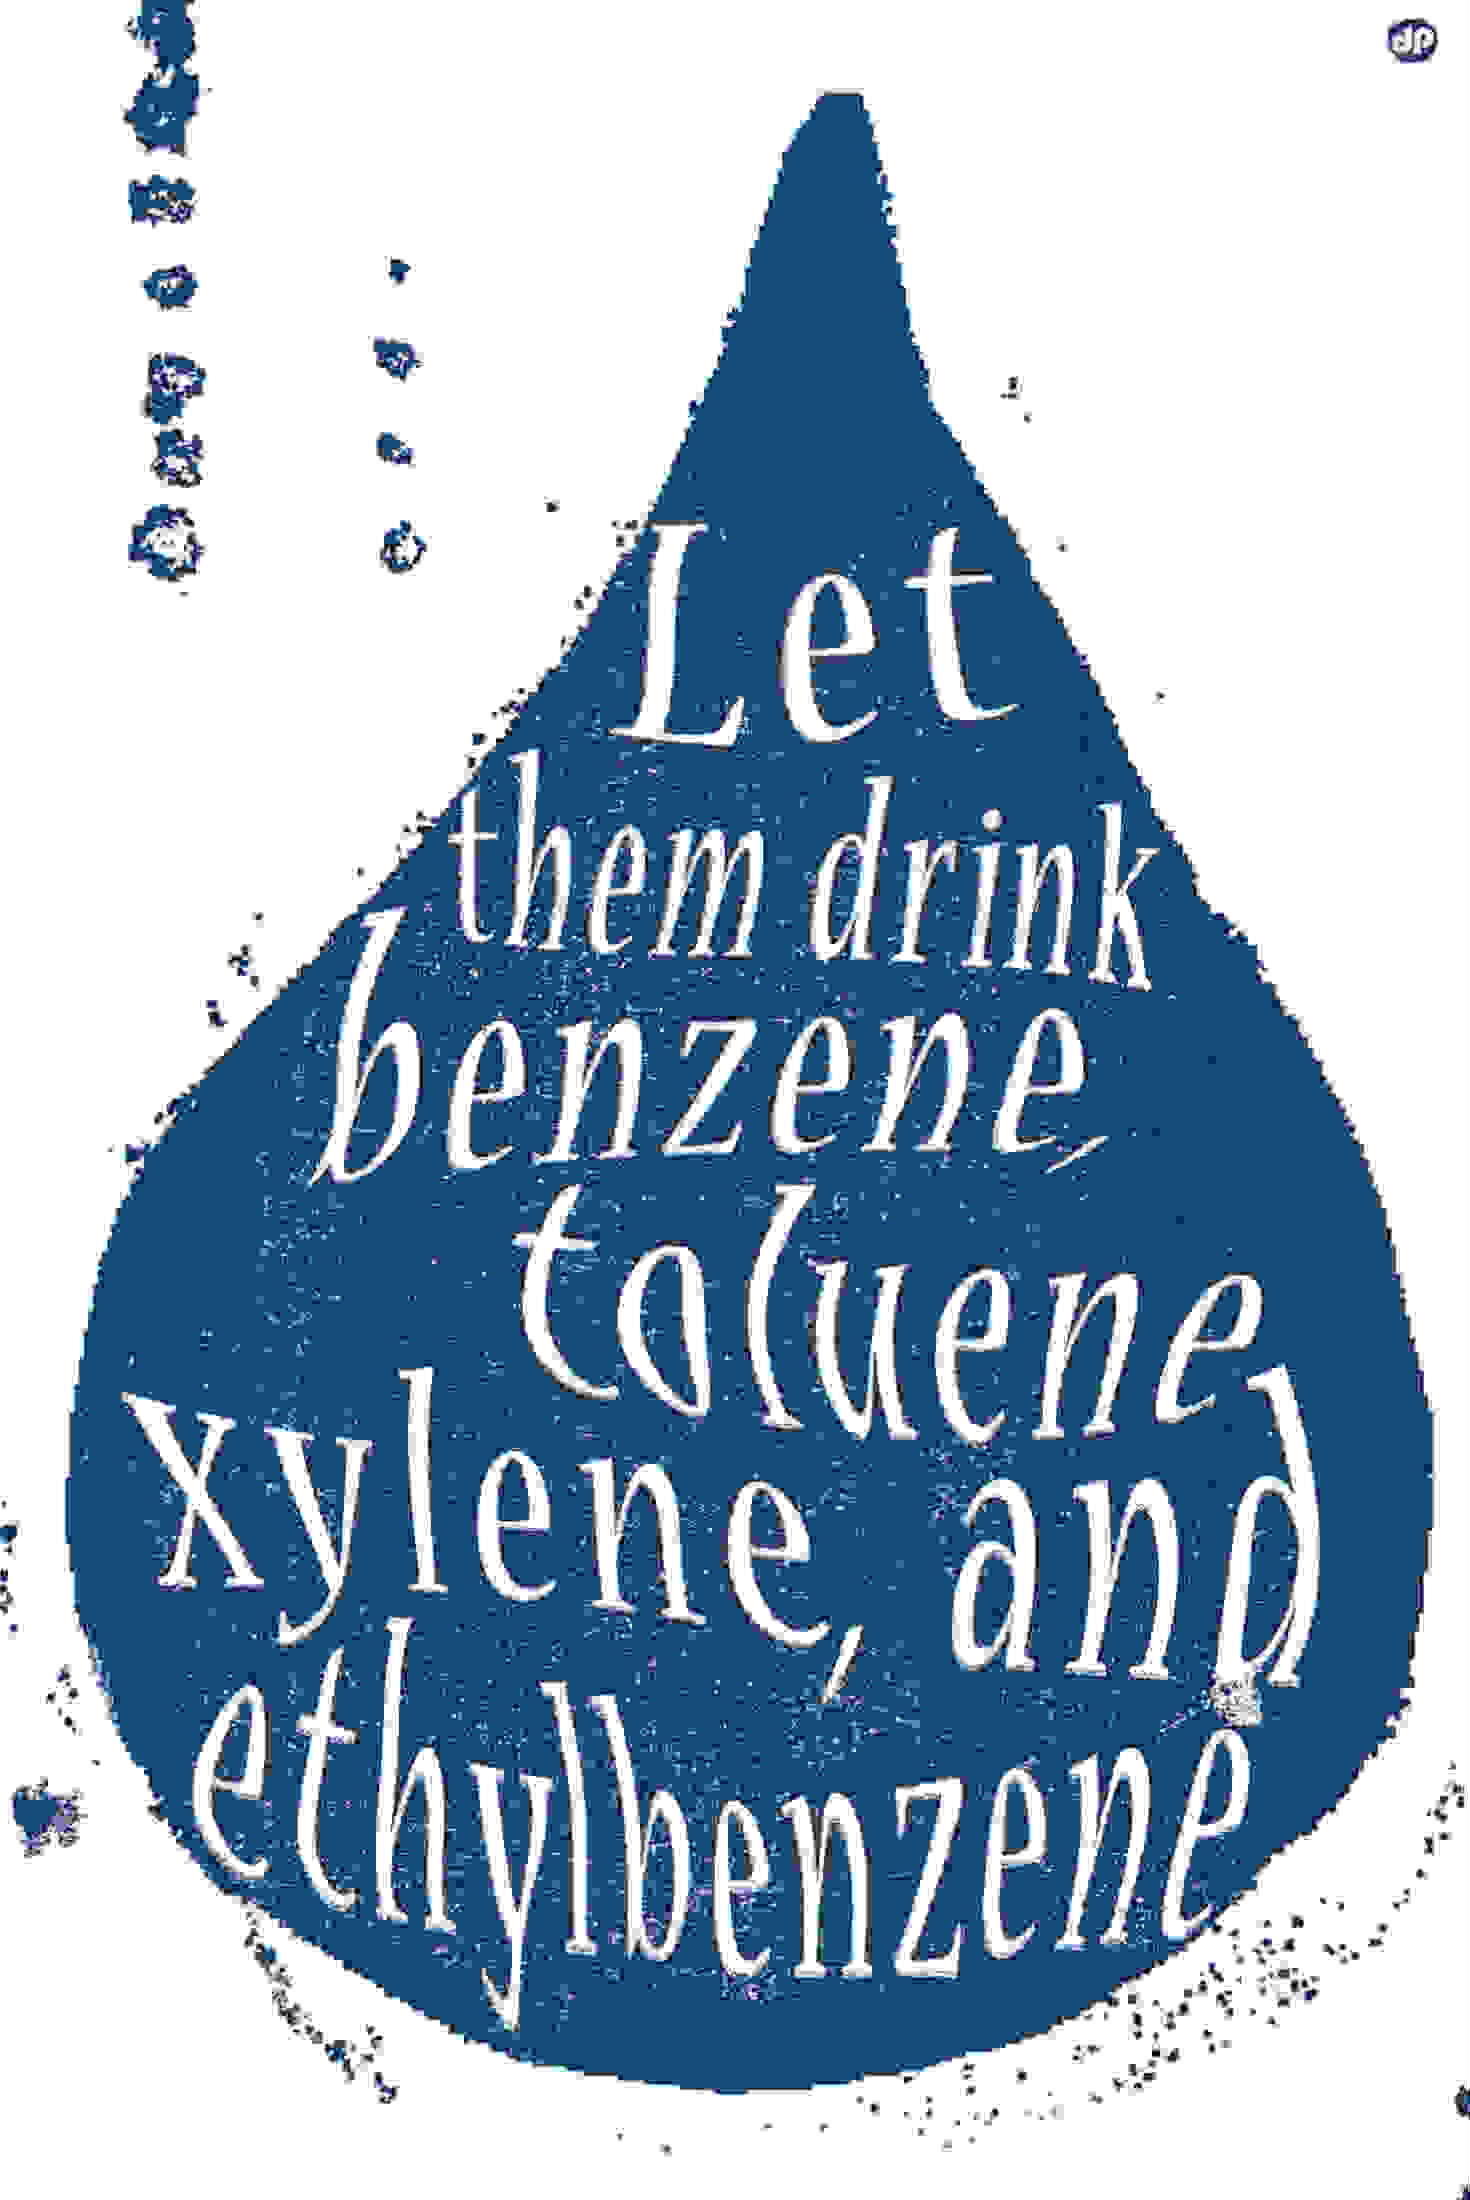 2011年的反压裂海报中提到了BTEX化学品